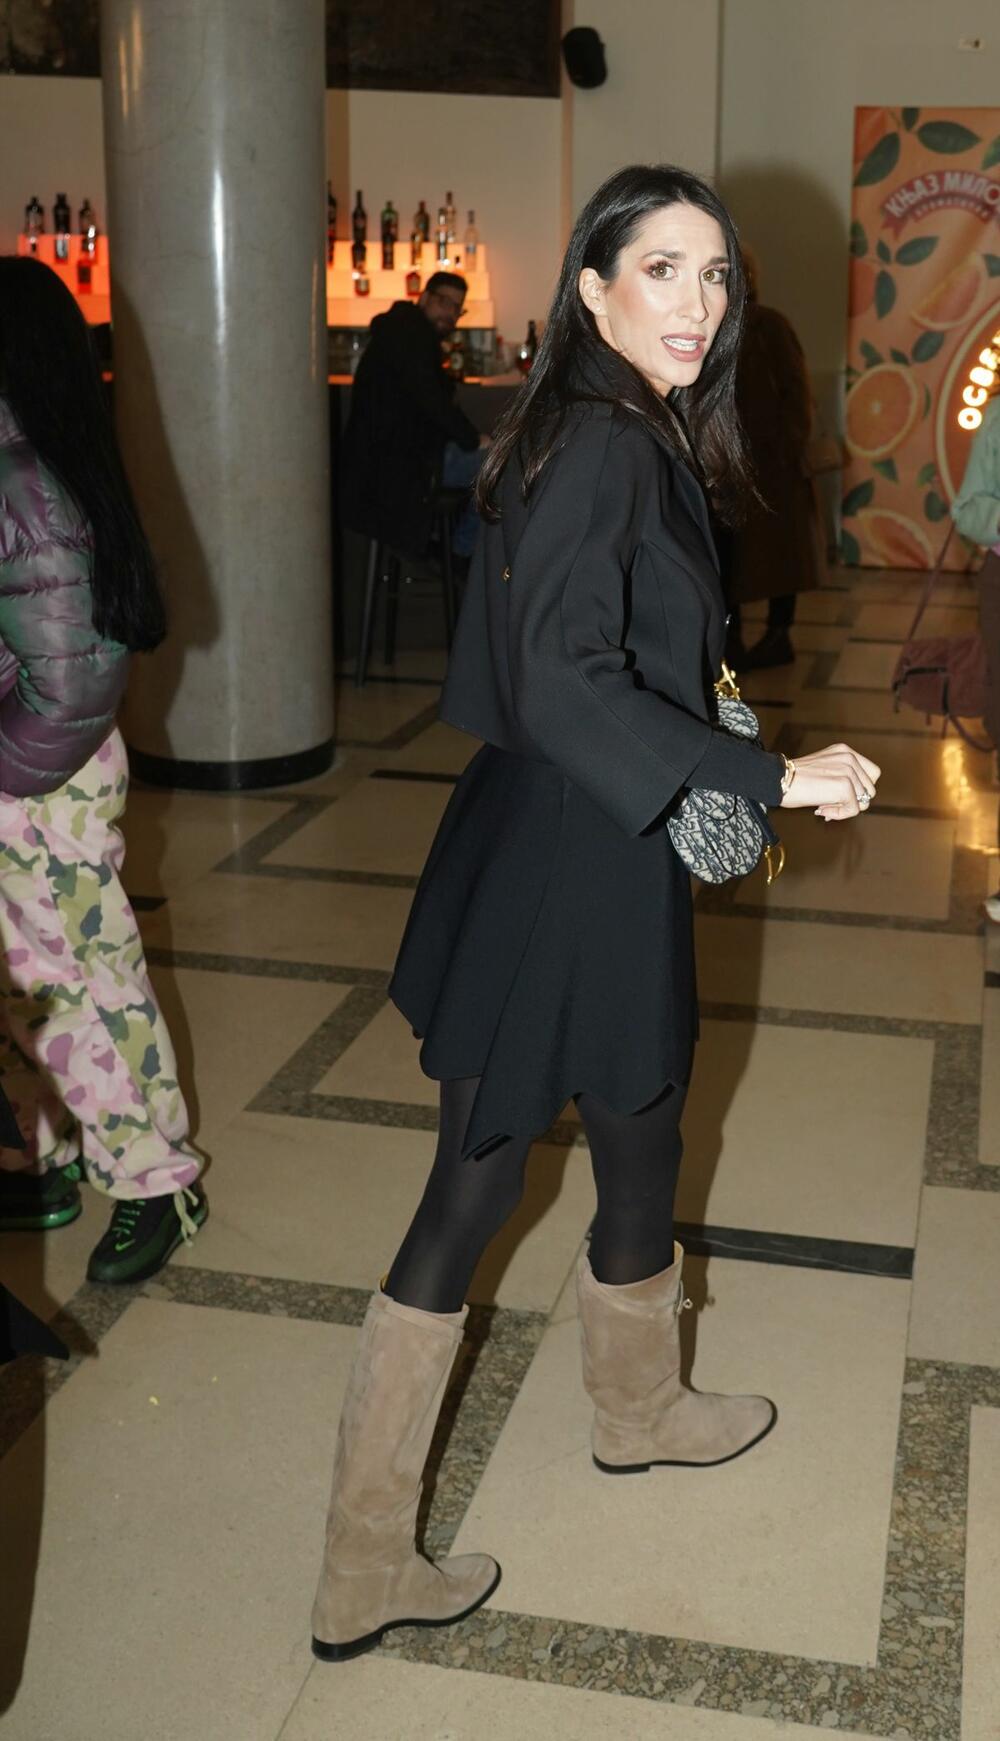 <p>Sasvim crna odevna kombinacjia uz prave aksesoare i obuću može da izgleda daleko interesantnije, a to odlično zna naša popularna glumica Jelisaveta Orašanin Teodosić</p>